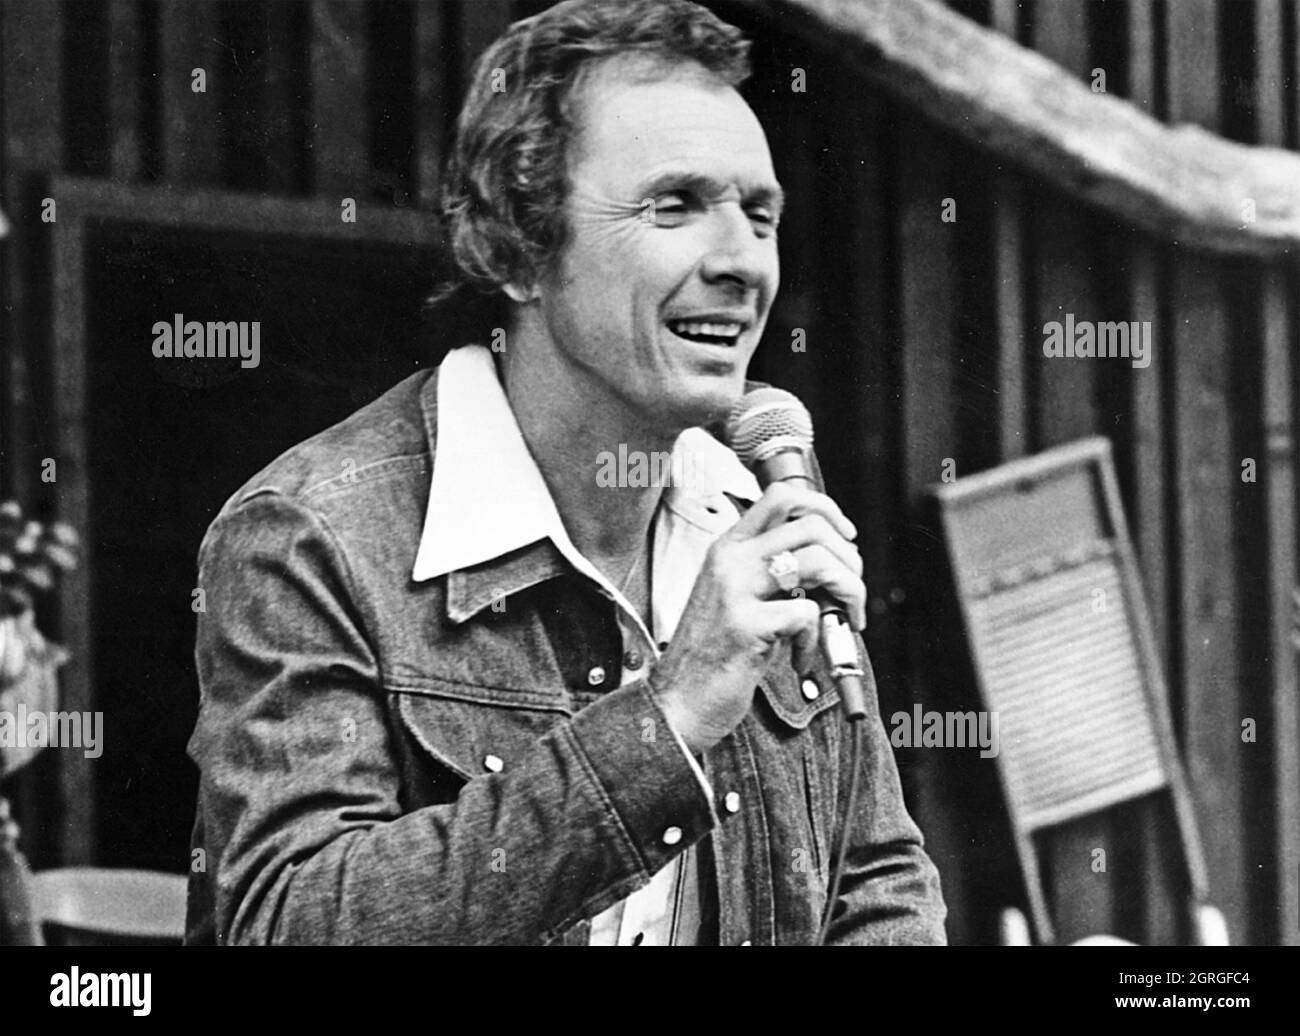 MEL TILLS (1932-2017) photo promotionnelle du chanteur et compositeur américain de musique country vers 1972 Banque D'Images